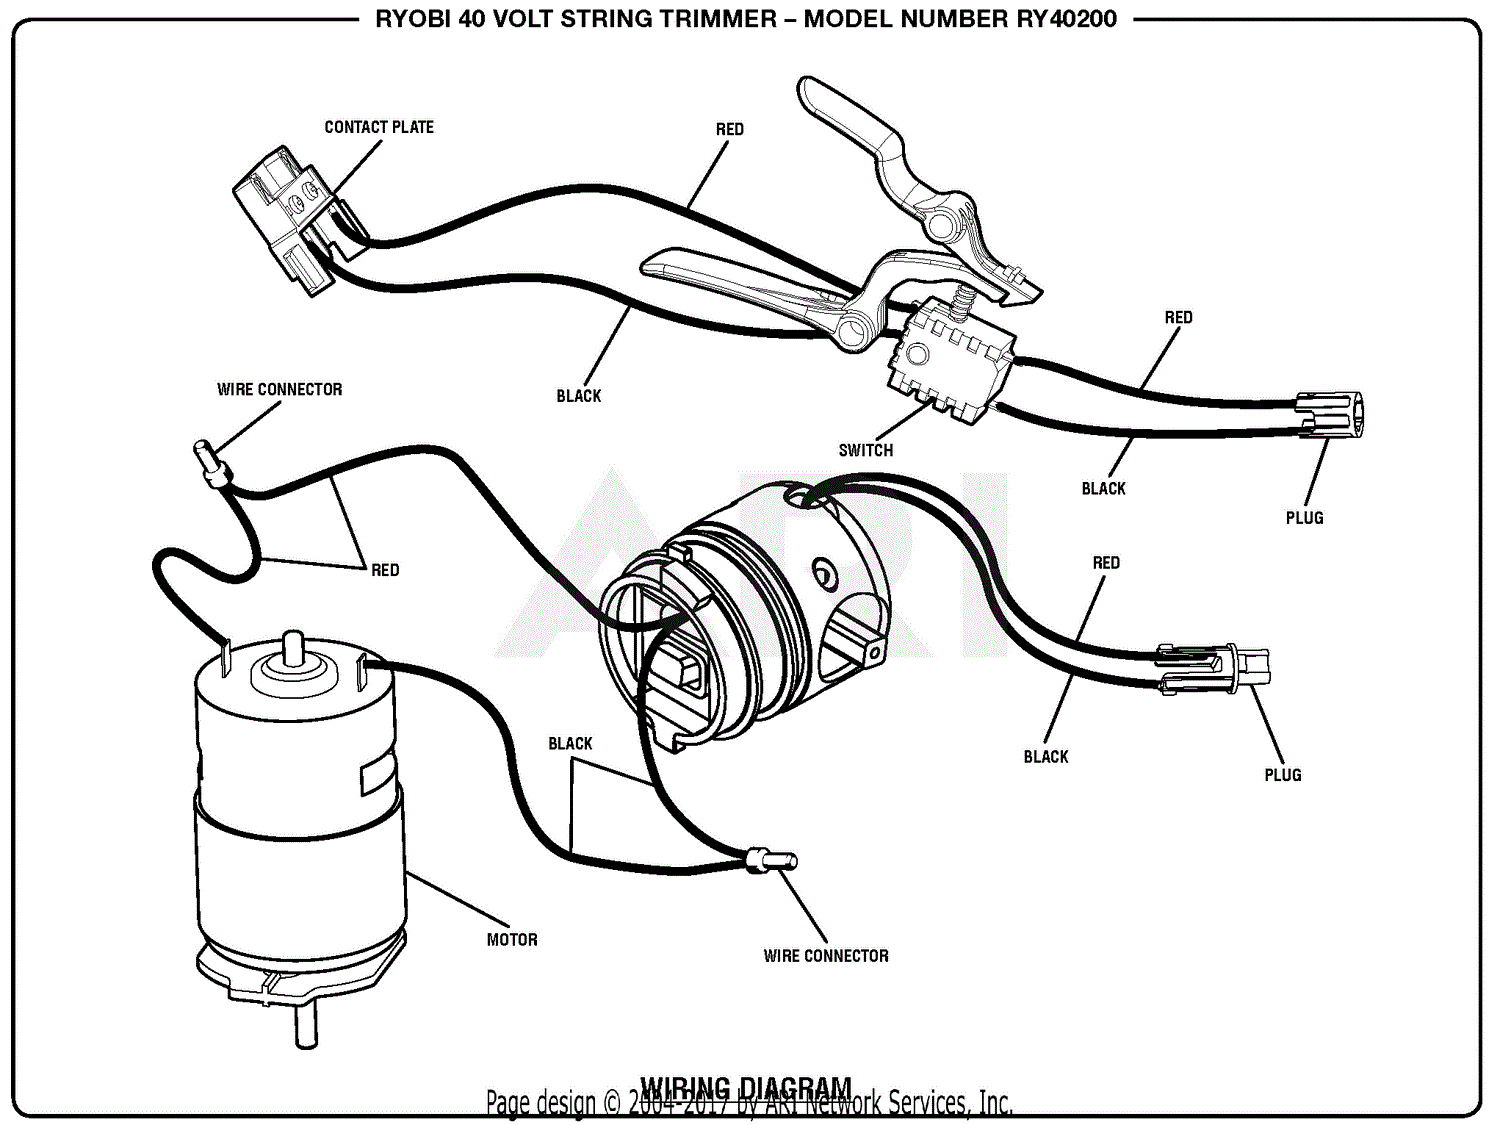 Homelite Ry40200 40 Volt String Trimmer Parts Diagram For